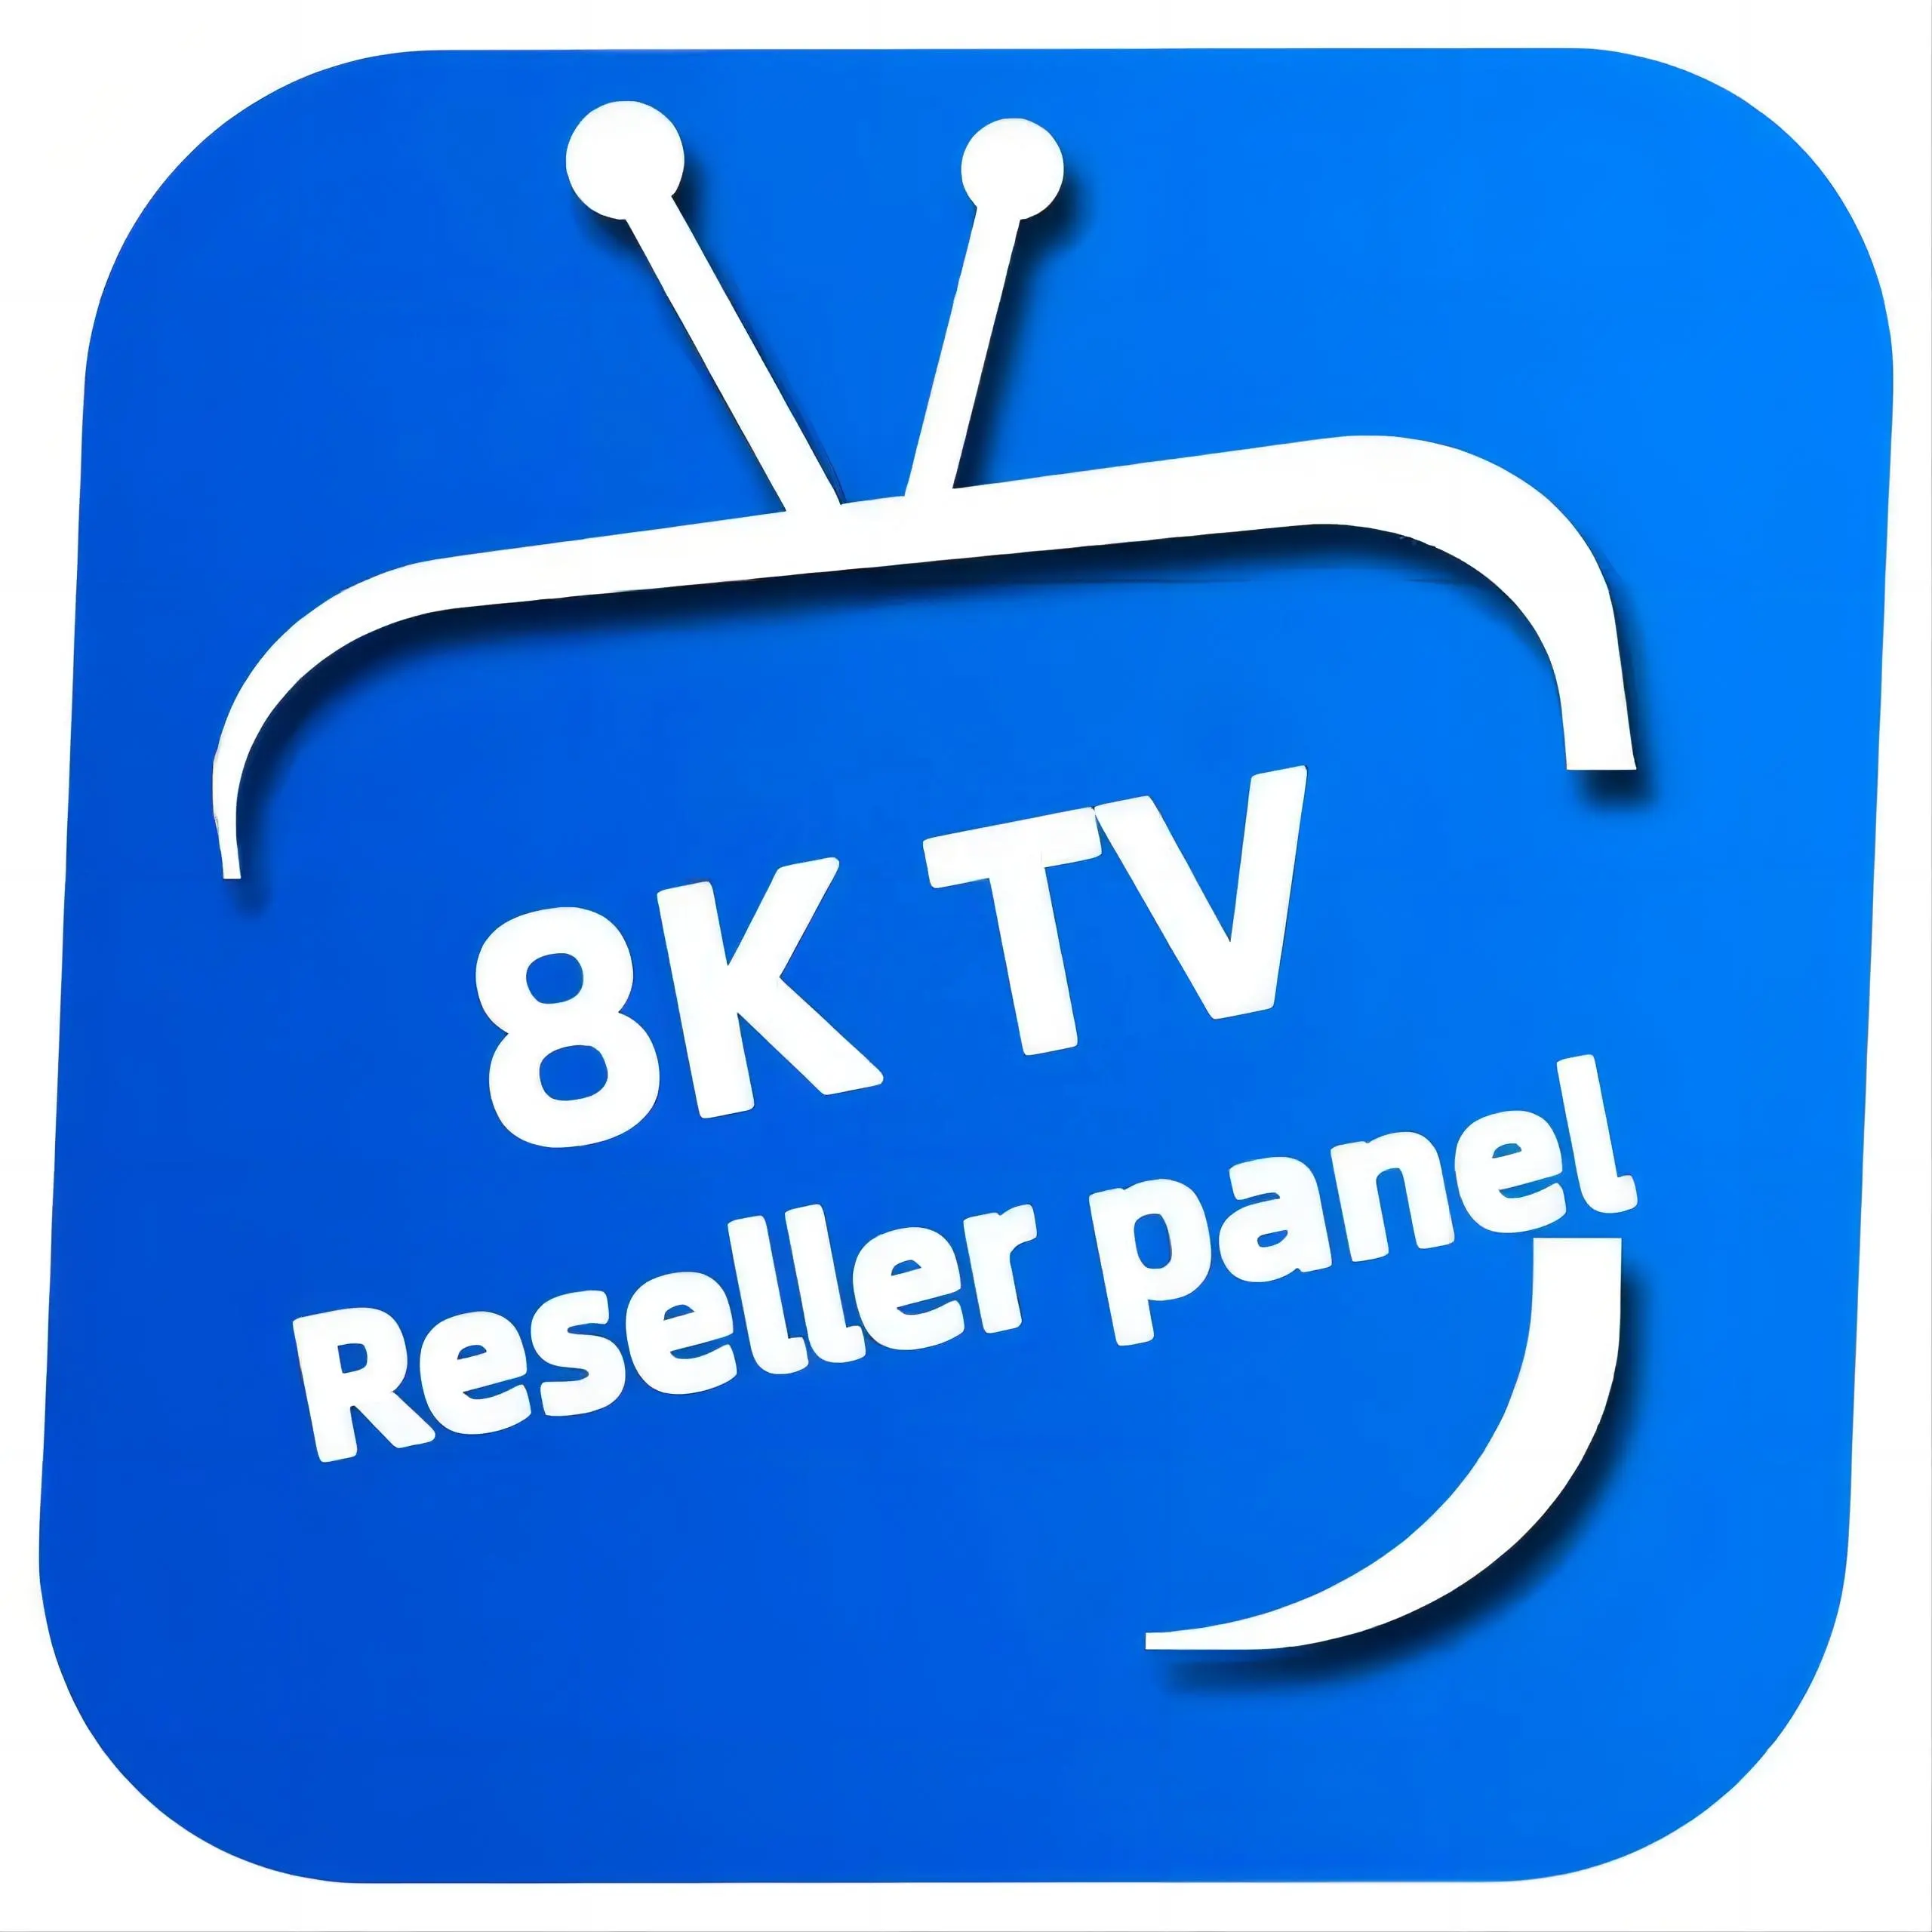 4k IPTV Control Panel For reseller best iptv smart tv 4k hot for reseller panel m3u list subscription 12months